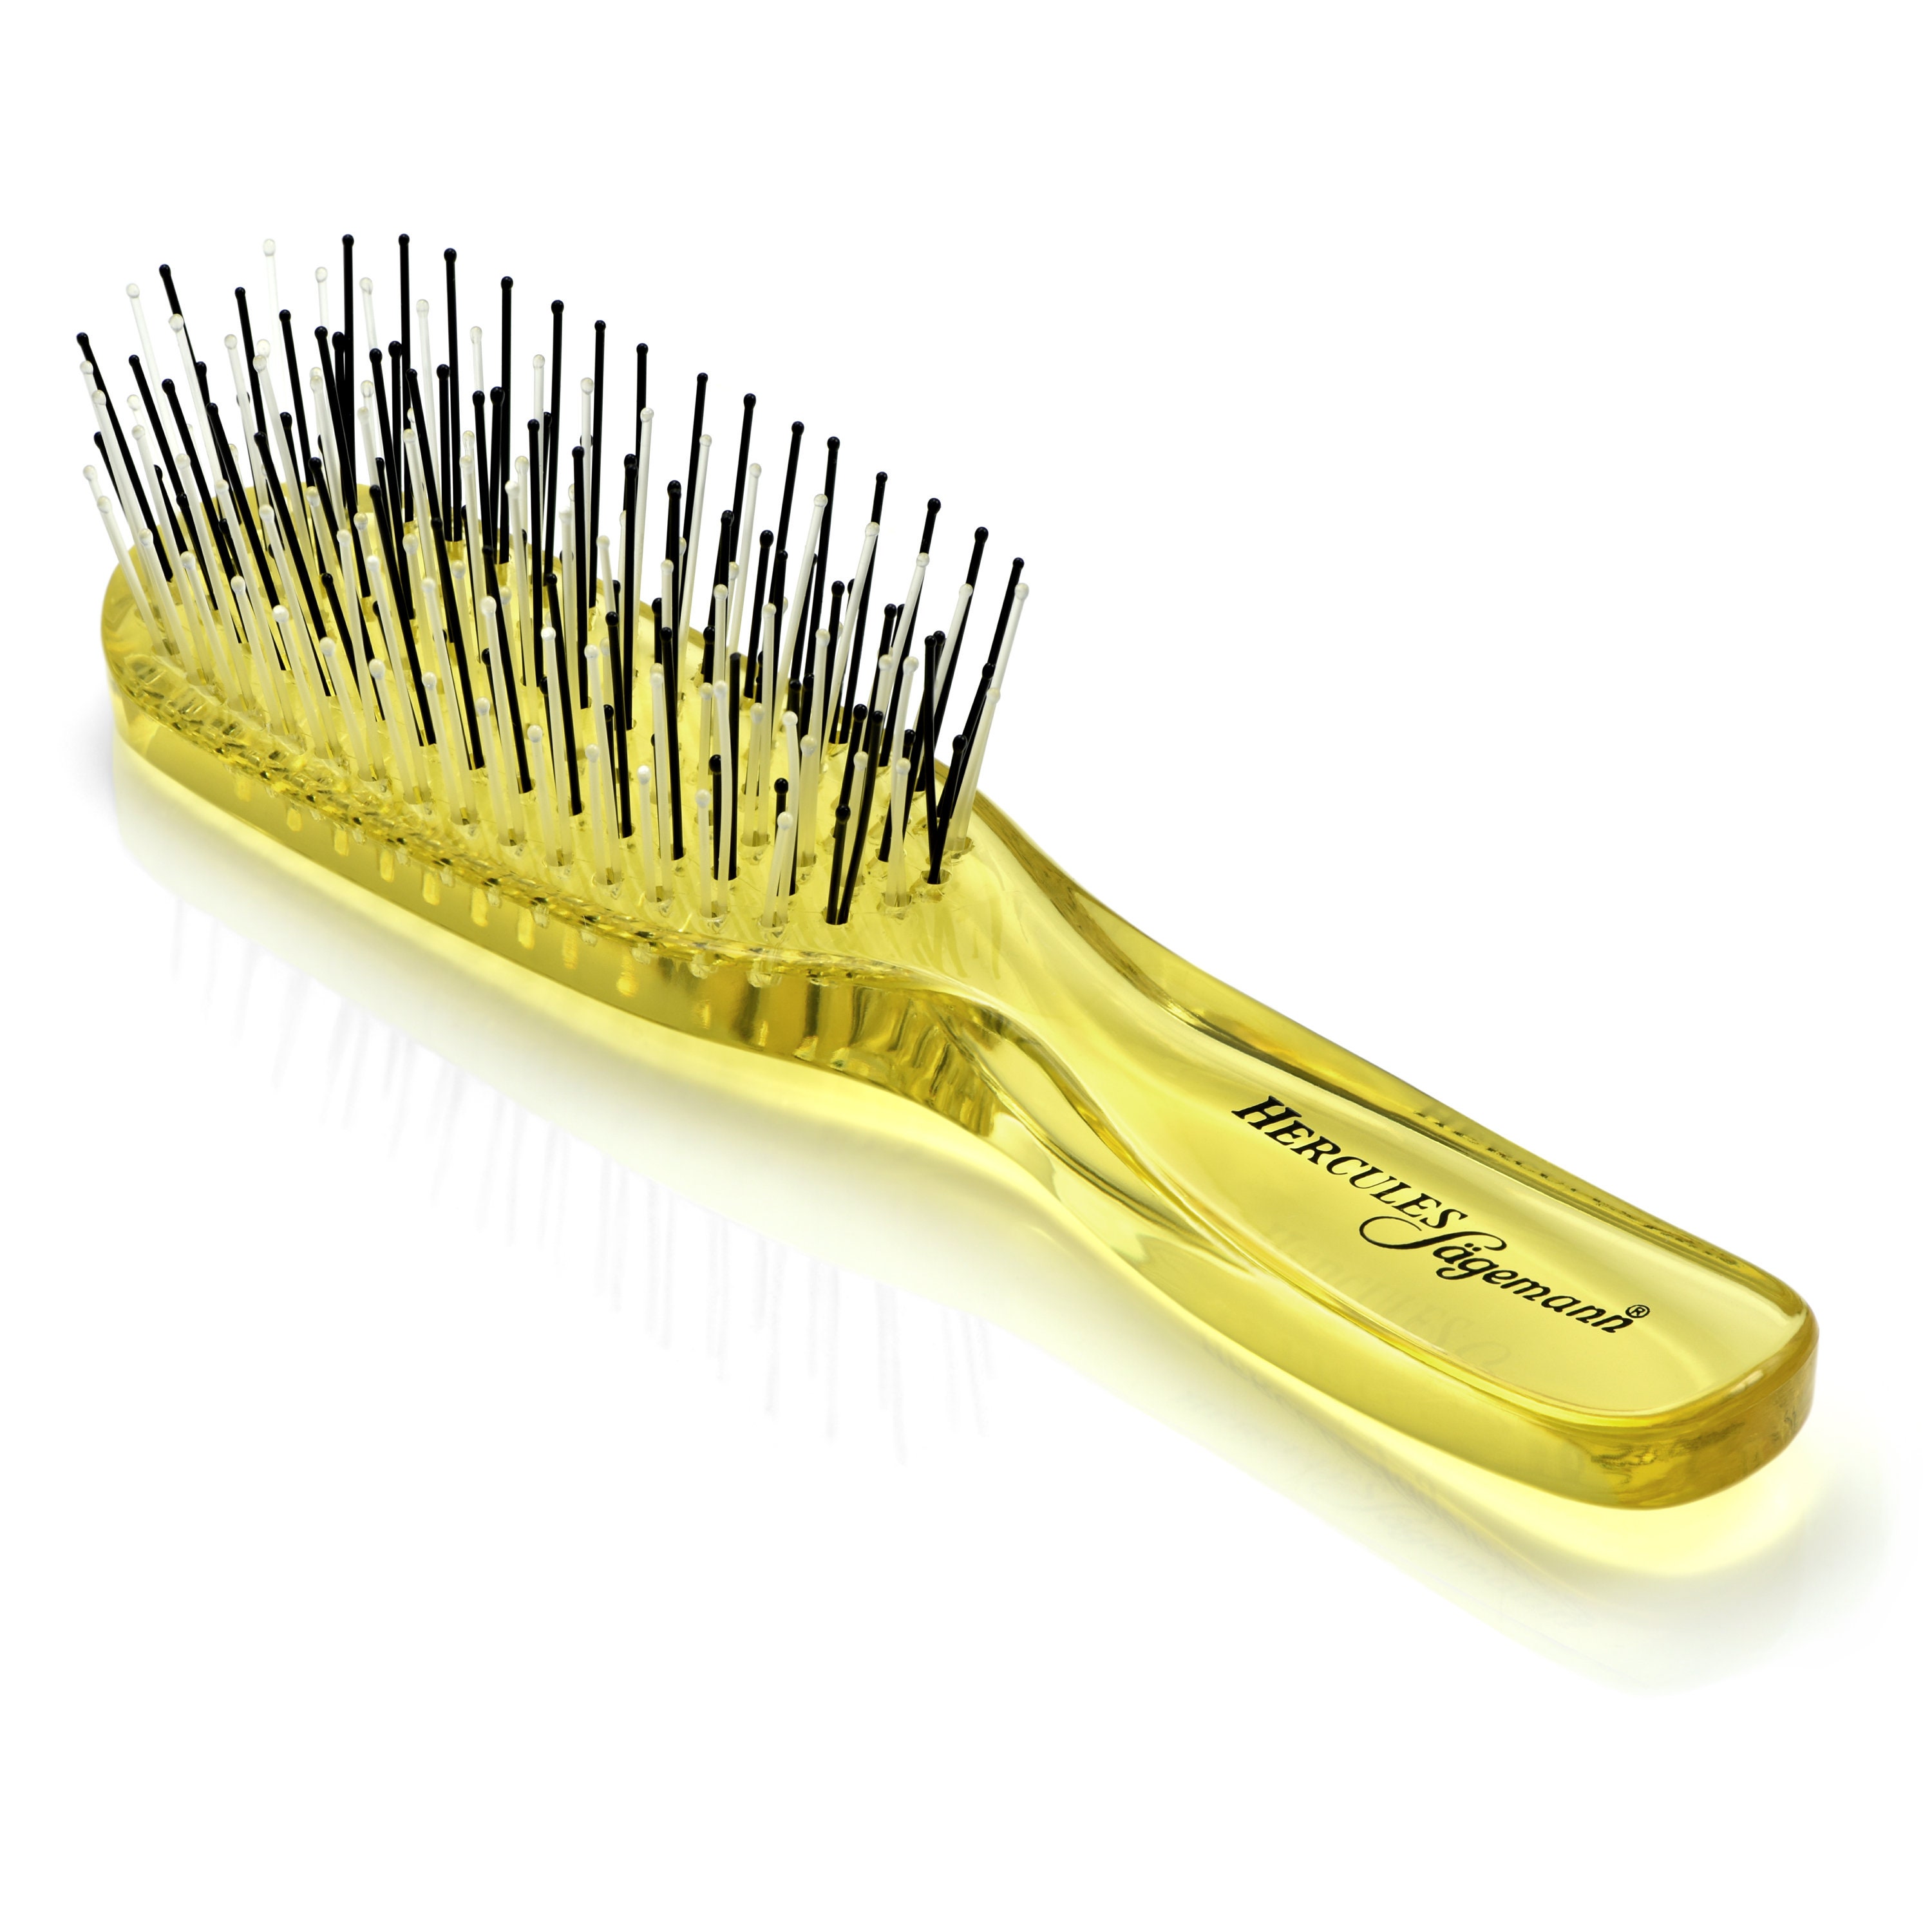 Round Boar Bristle Hair Brush Soft Bristle Hair Brush Hair Brush